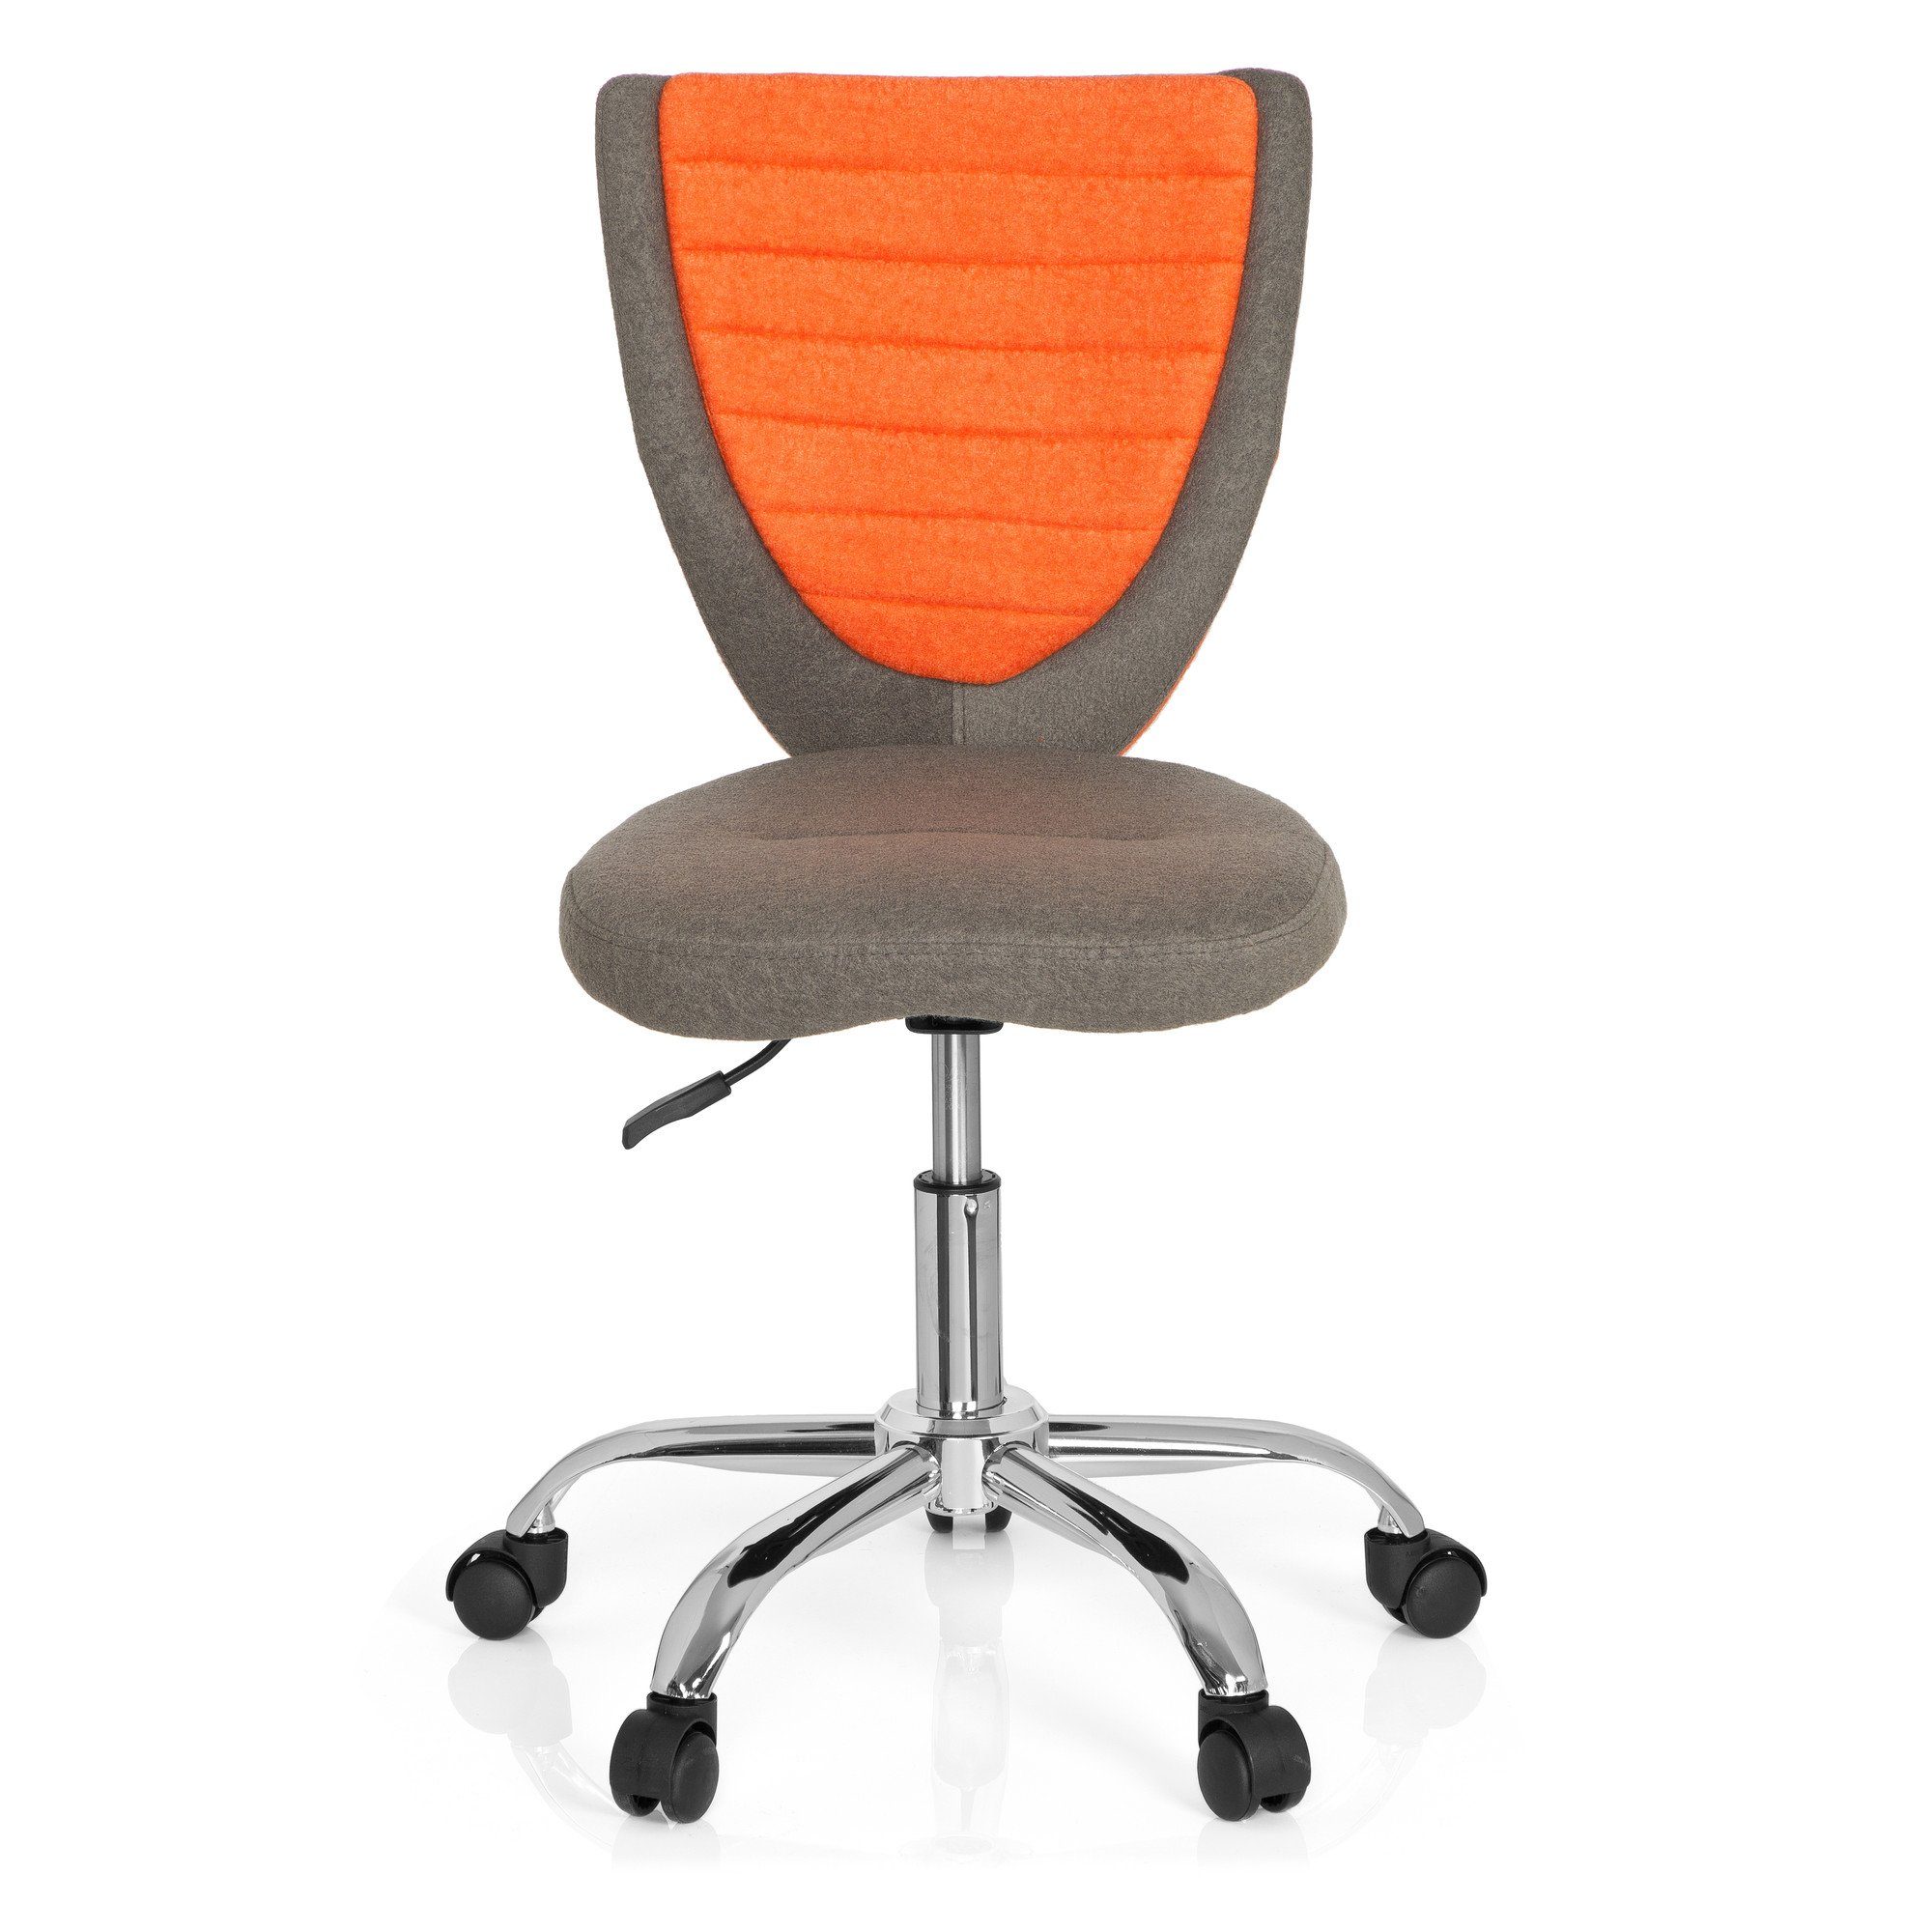 Stoff OFFICE ohne KIDDY Grau/Orange Drehstuhl hjh (1 St), COMFORT Armlehnen Kinderdrehstuhl ergonomisch mitwachsend,